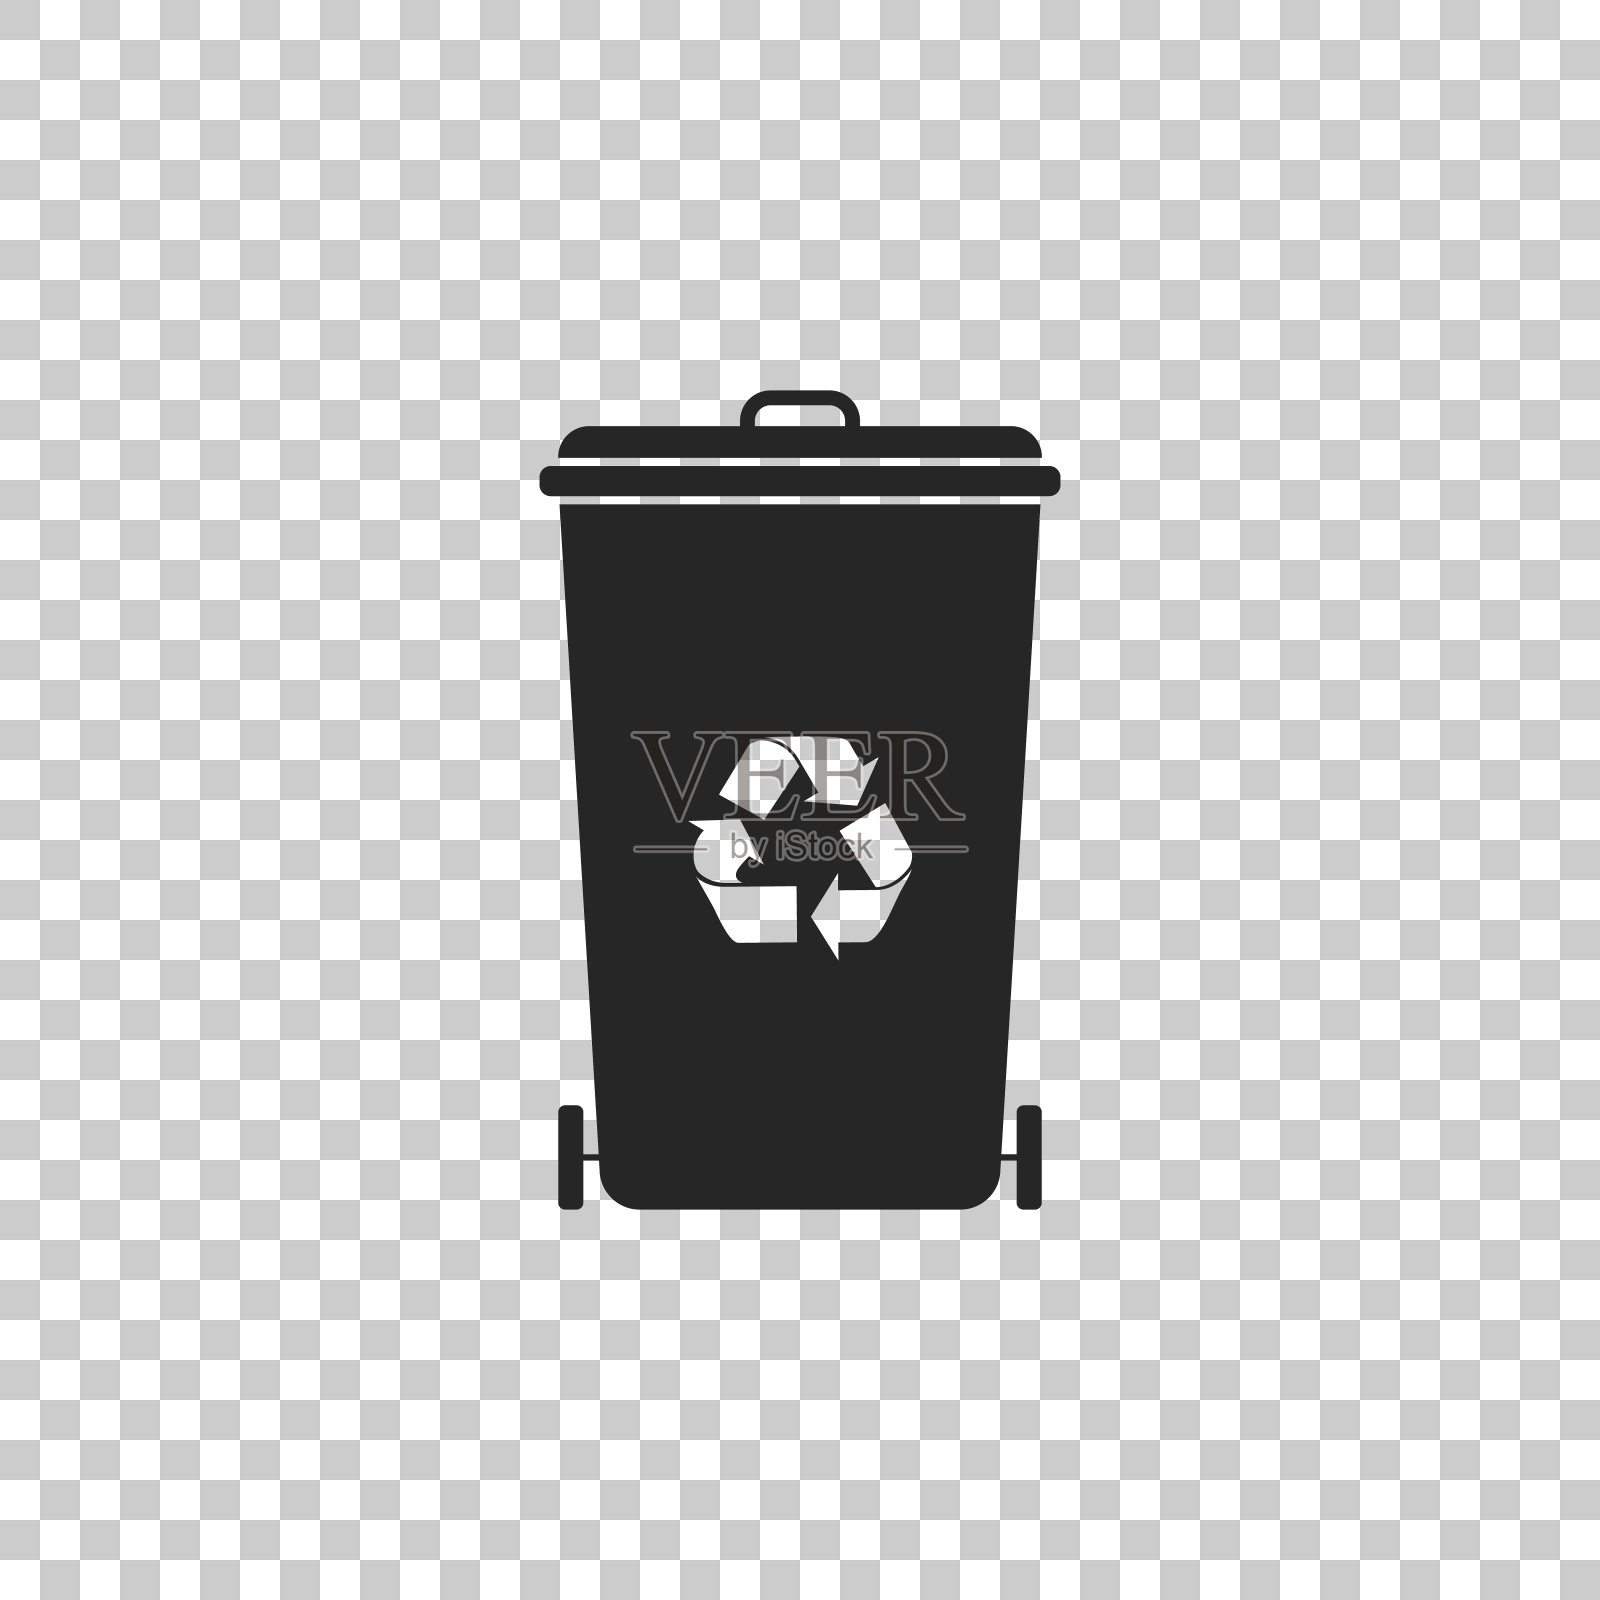 回收站与回收符号图标隔离在透明的背景。垃圾桶图标。垃圾桶的迹象。回收篮图标。平面设计。矢量图图标素材